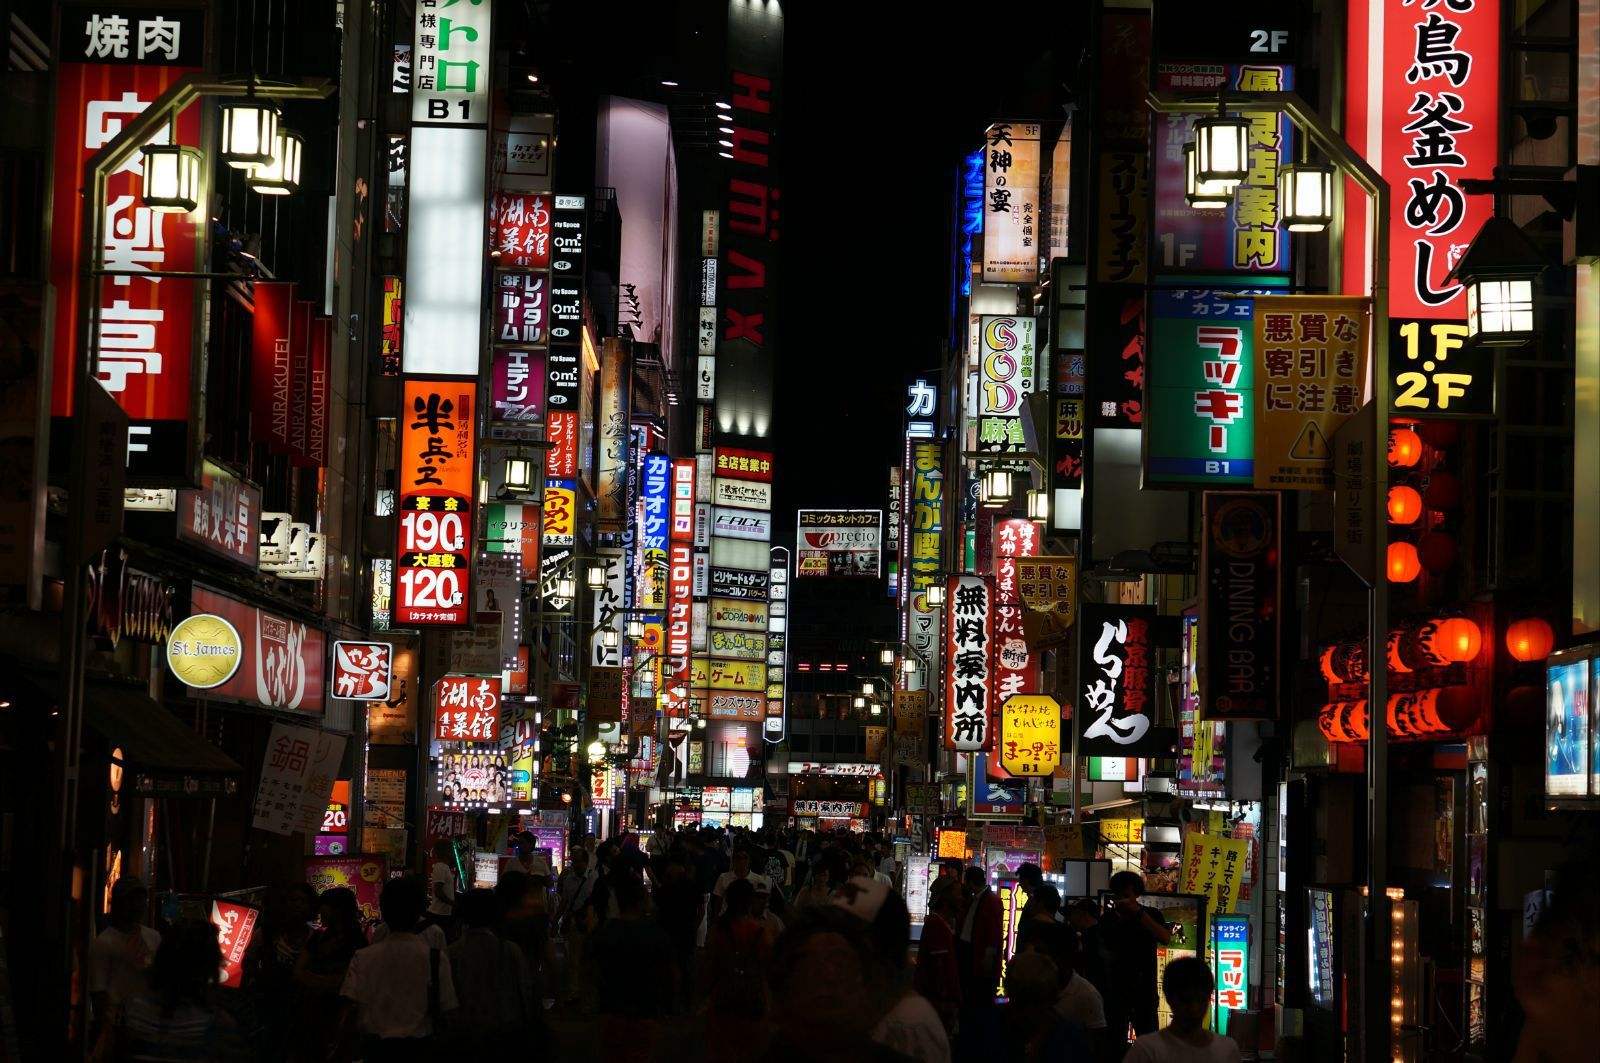 日本东京红灯区歌舞伎町攻略 - 日本红灯区 红灯区 红灯网